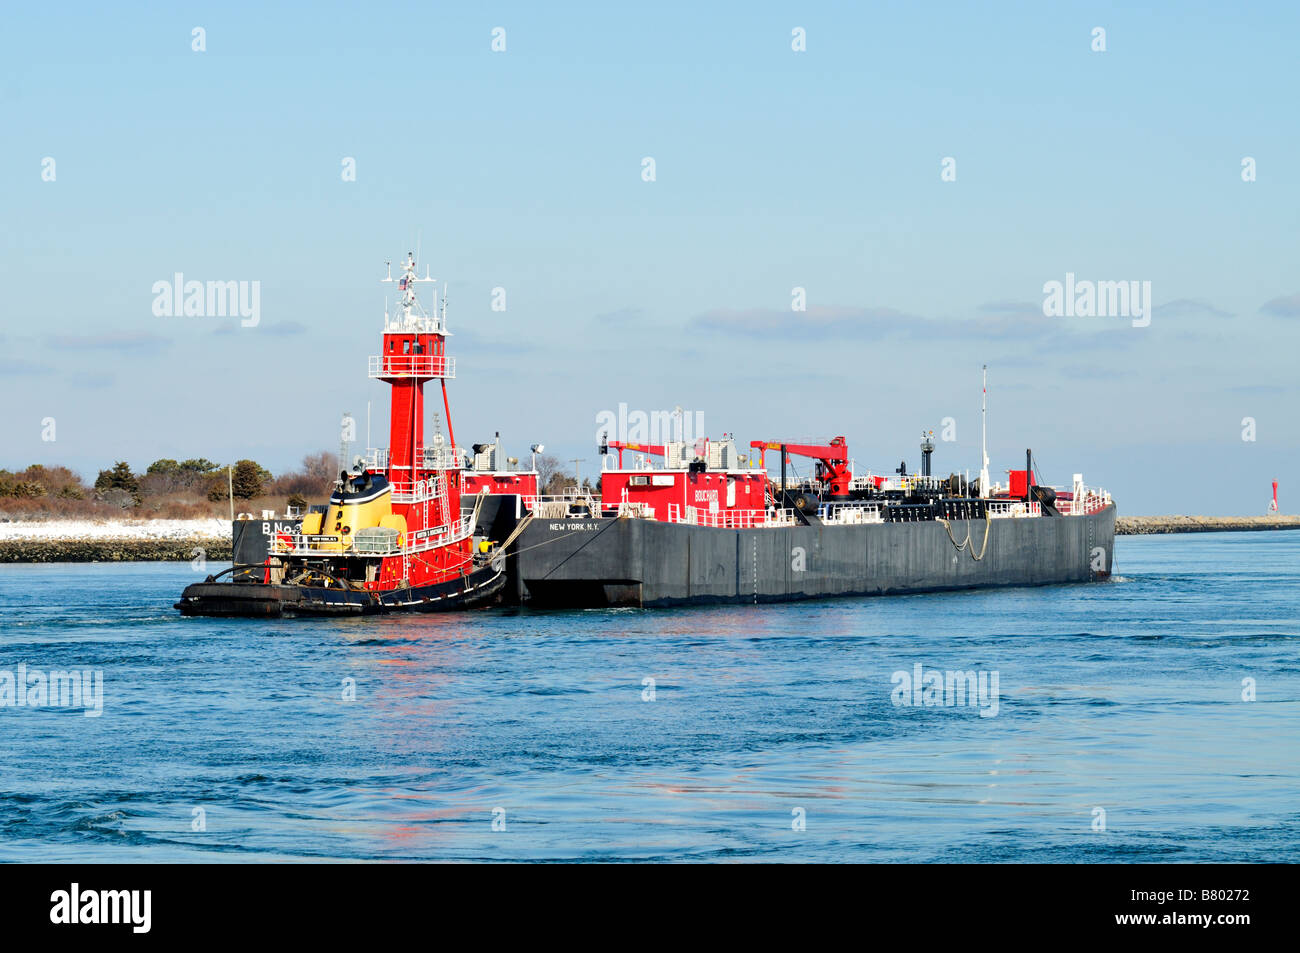 Red rimorchiatore a traino e inclus voce fuori in mare su una chiara giornata invernale da 'Bouchard trasporto' Company Foto Stock